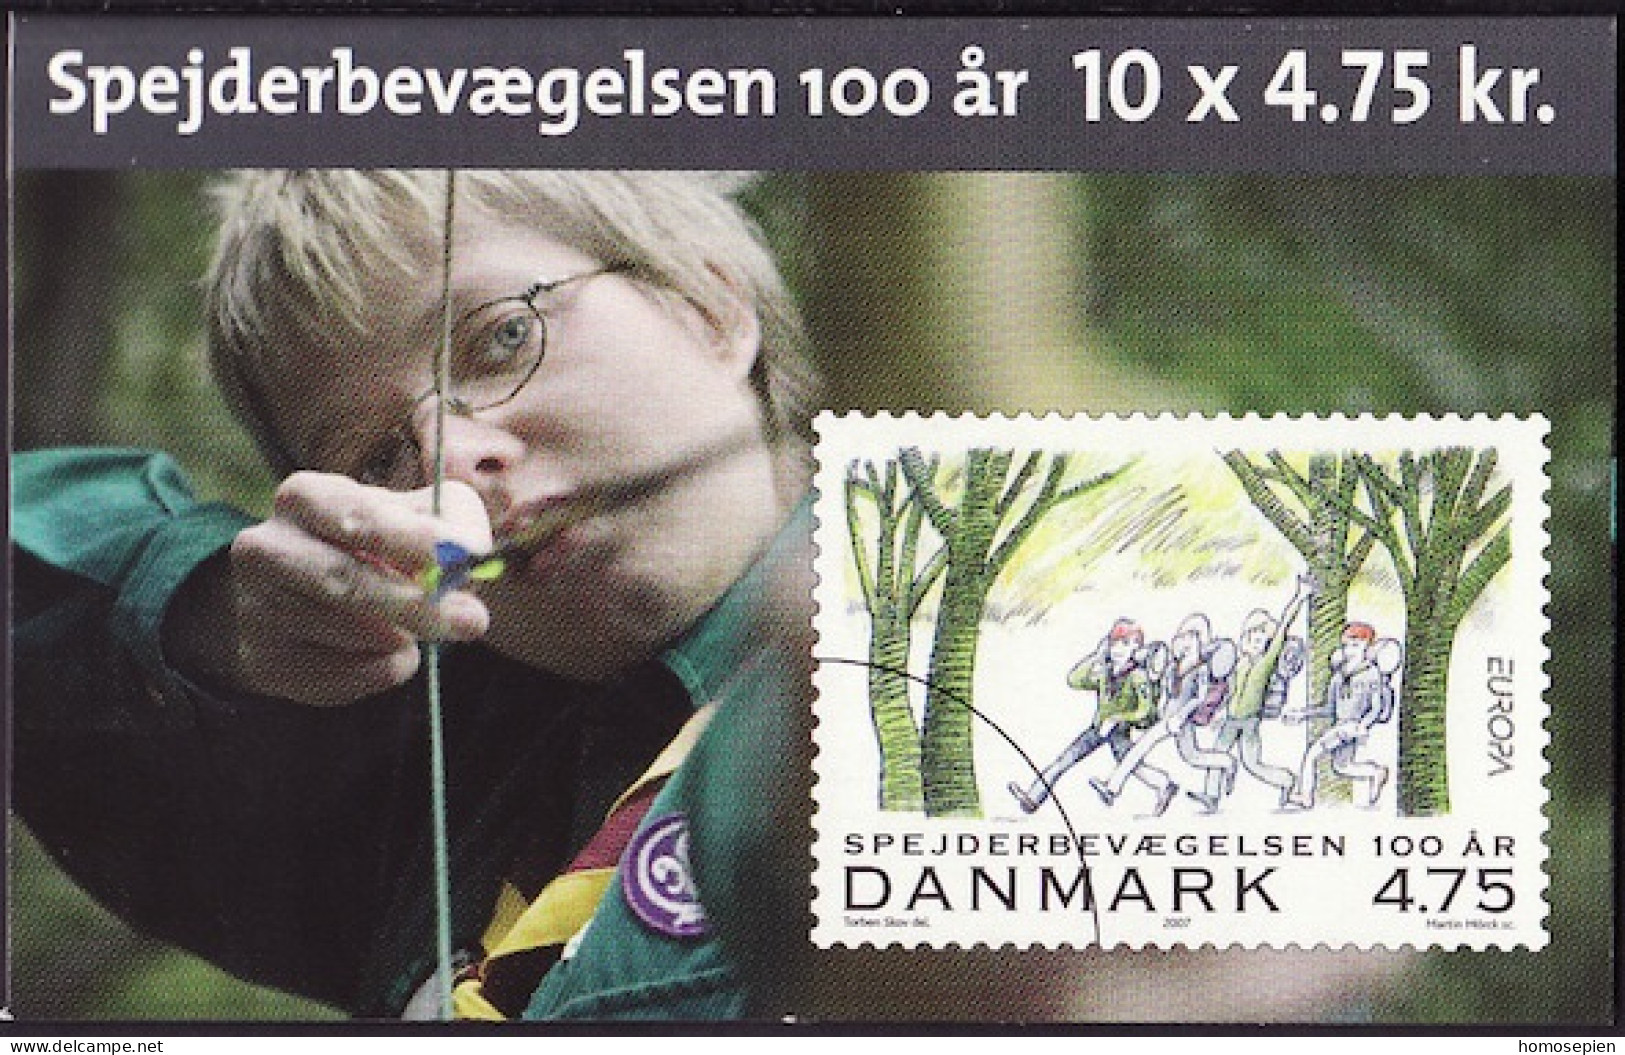 Danemark - Dänemark - Denmark Carnet 2007 Y&T N°C1473 - Michel N°MH1470 - 4,75k EUROPA - Vierge - Markenheftchen